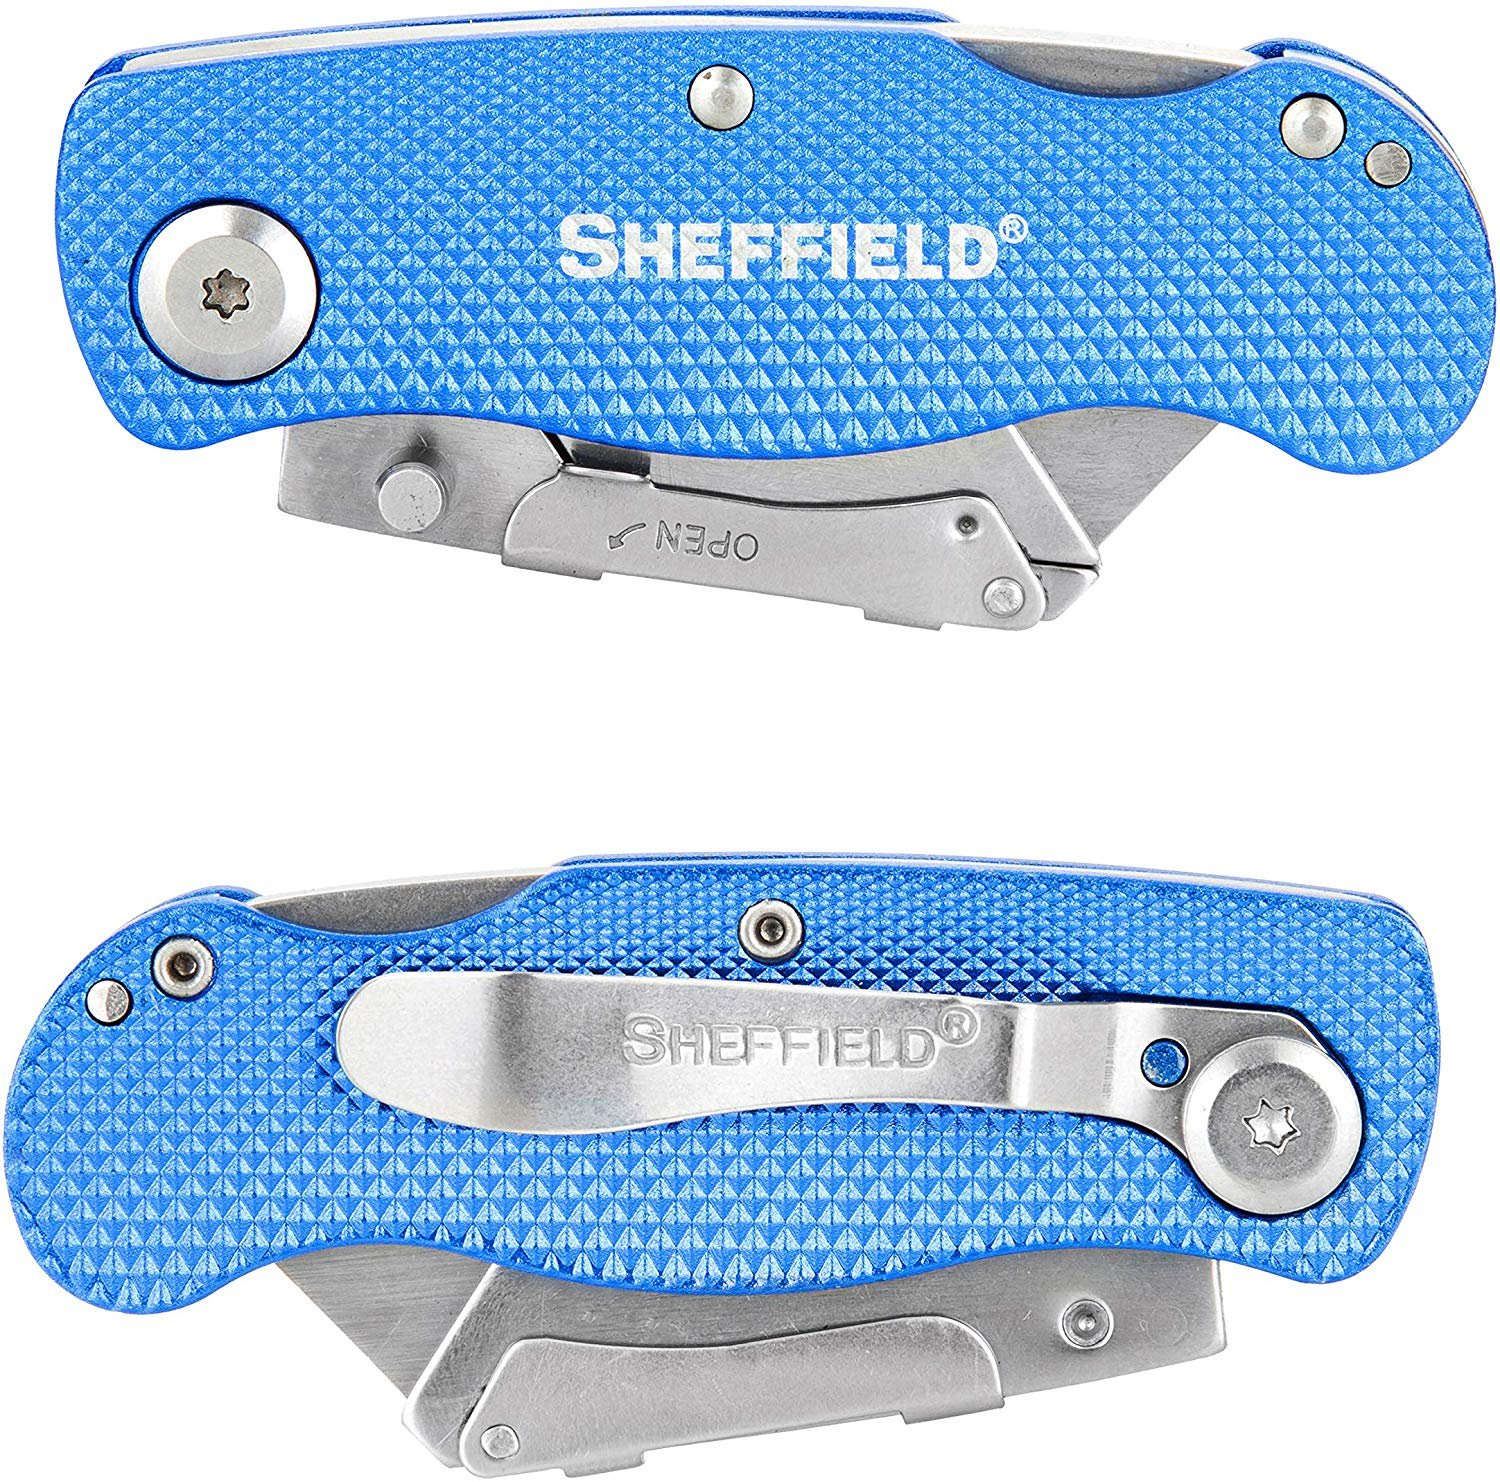 Sheffield 12113 Ultimate Lock Back Utility Knife - image 3 of 6